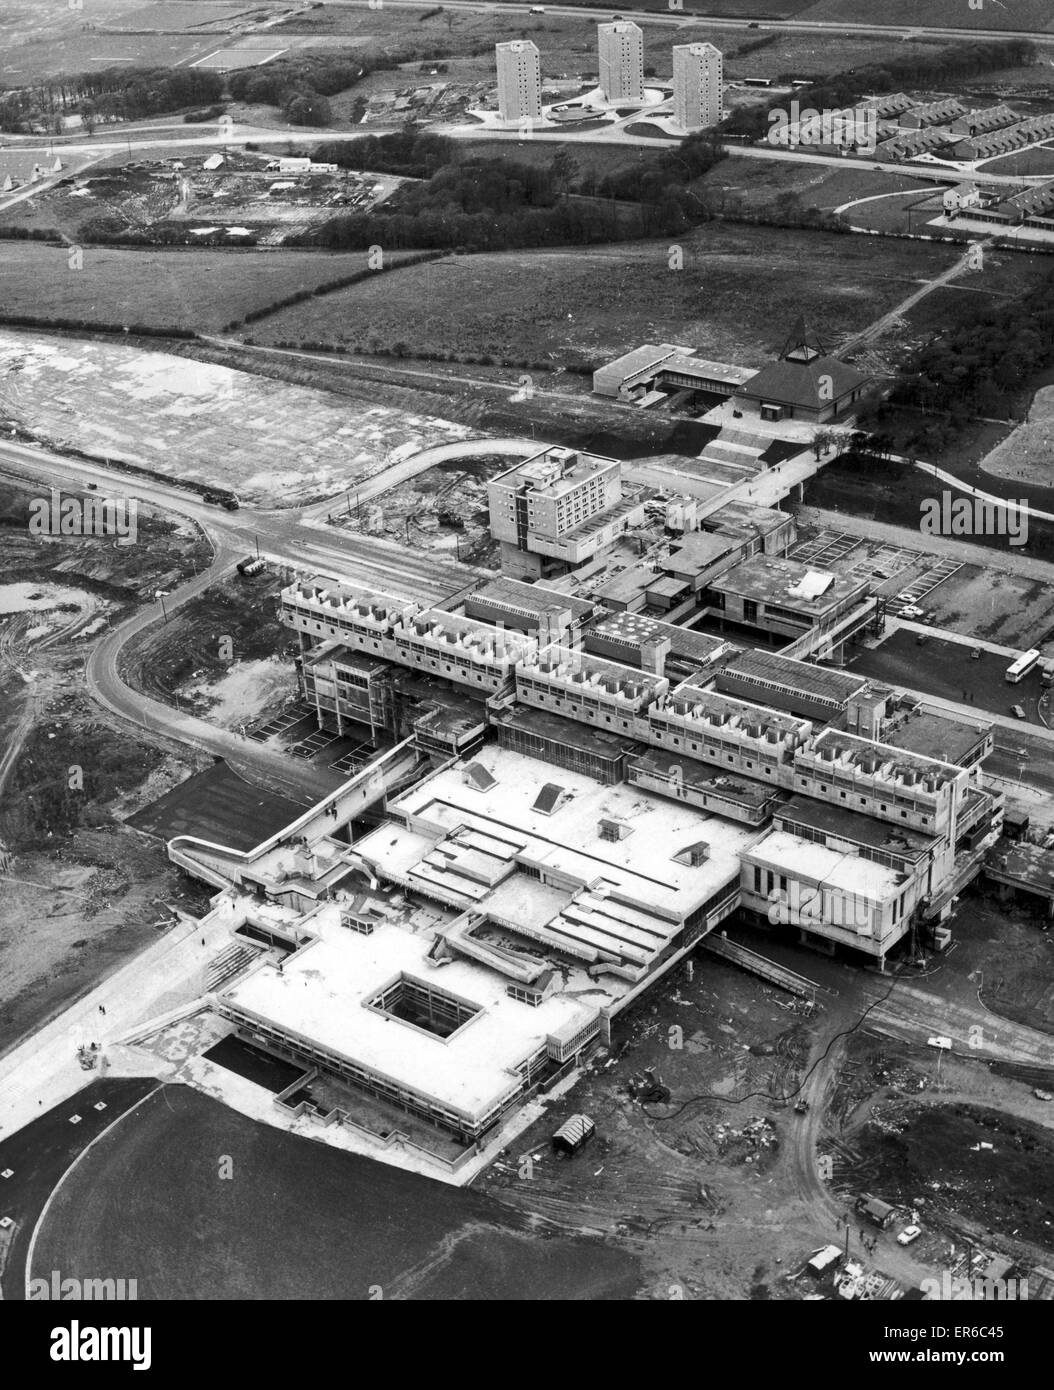 Vista aerea di Cumbernauld, North Lanarkshire, Scozia, 18 maggio 1967. La città è stata creata nel 1956 come una popolazione overspill per Glasgow City ha recentemente vinto un $25.000 dollar International Award come miglior progettato comunità nel mondo. Foto Stock